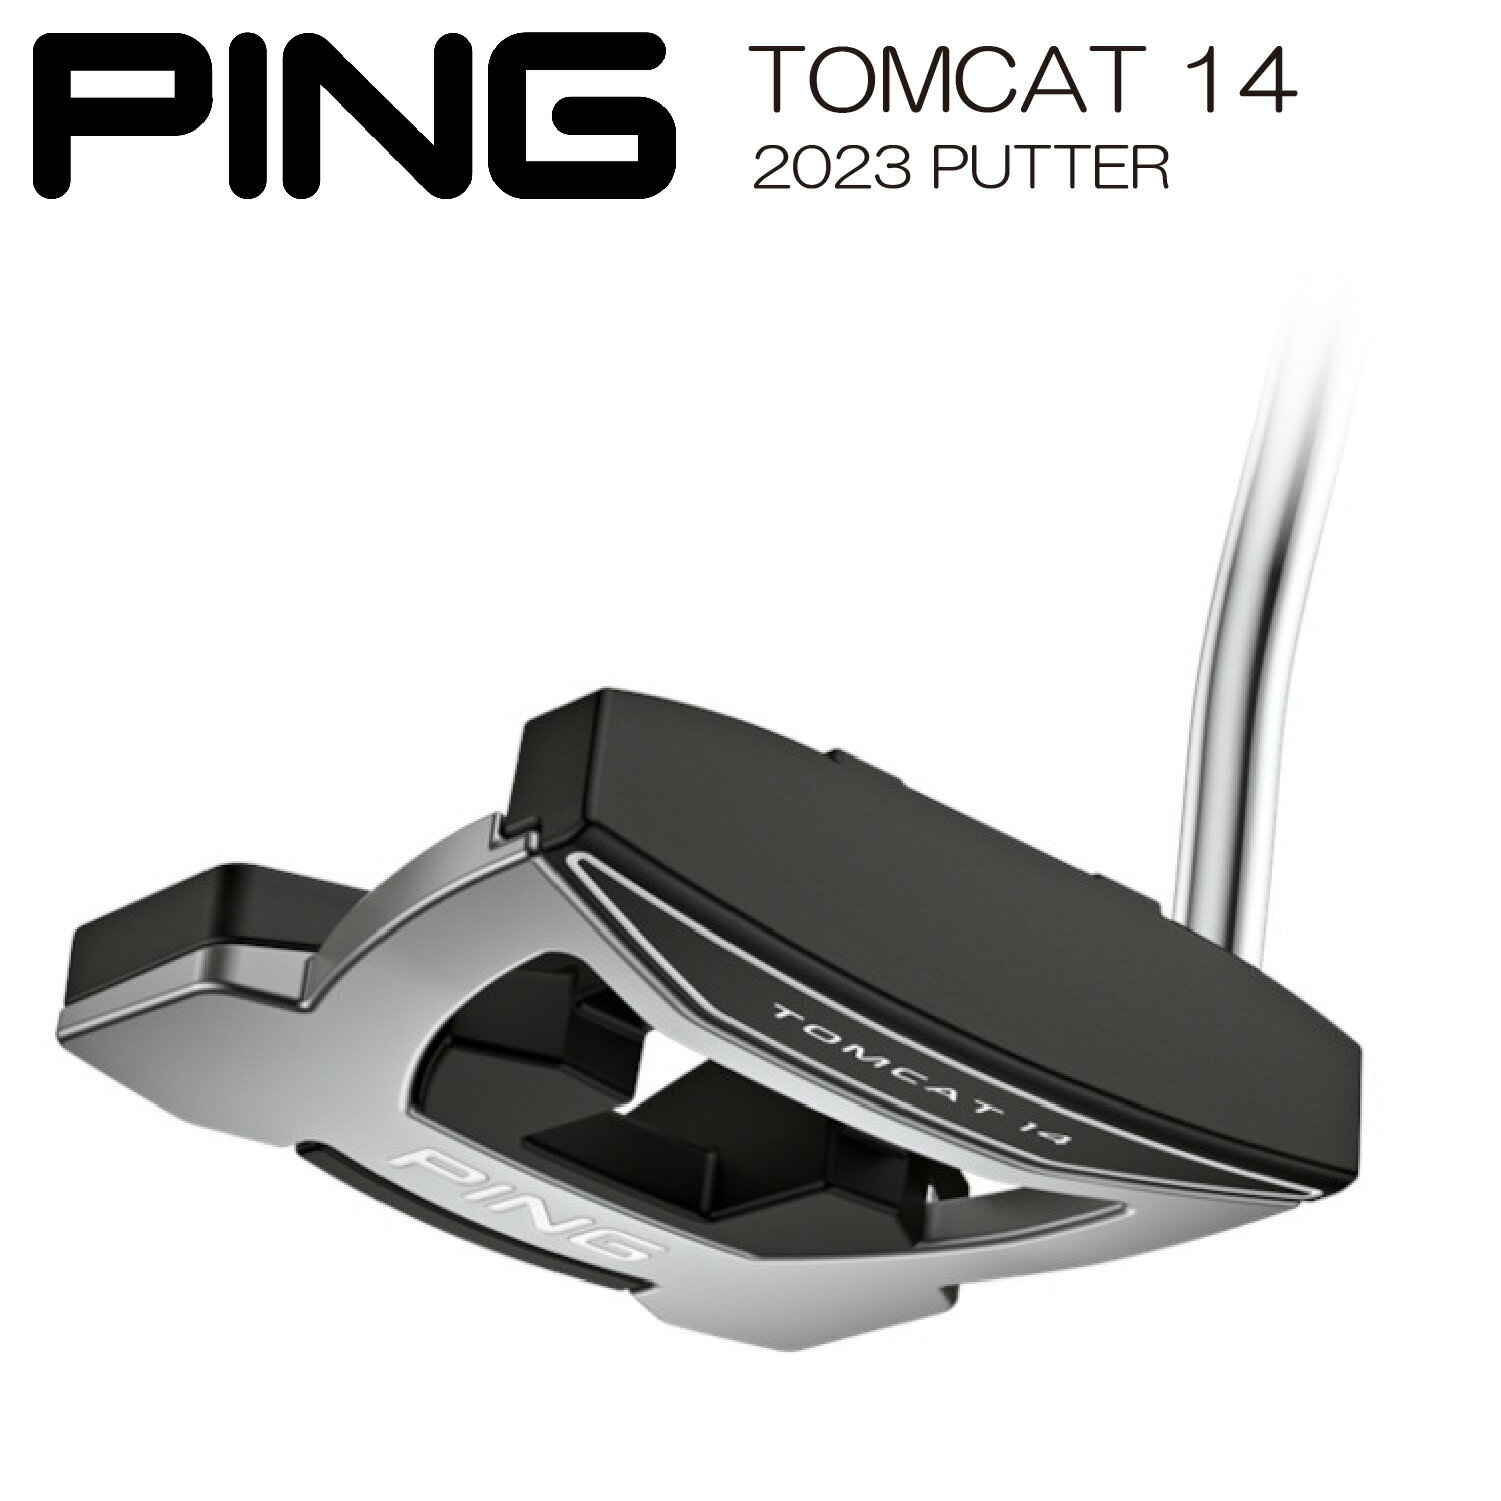 【カスタム可能】 TOMCAT 14 トムキャット PING PUTTER 2023 ピン パタークラブ ゴルフ ネオマレット型